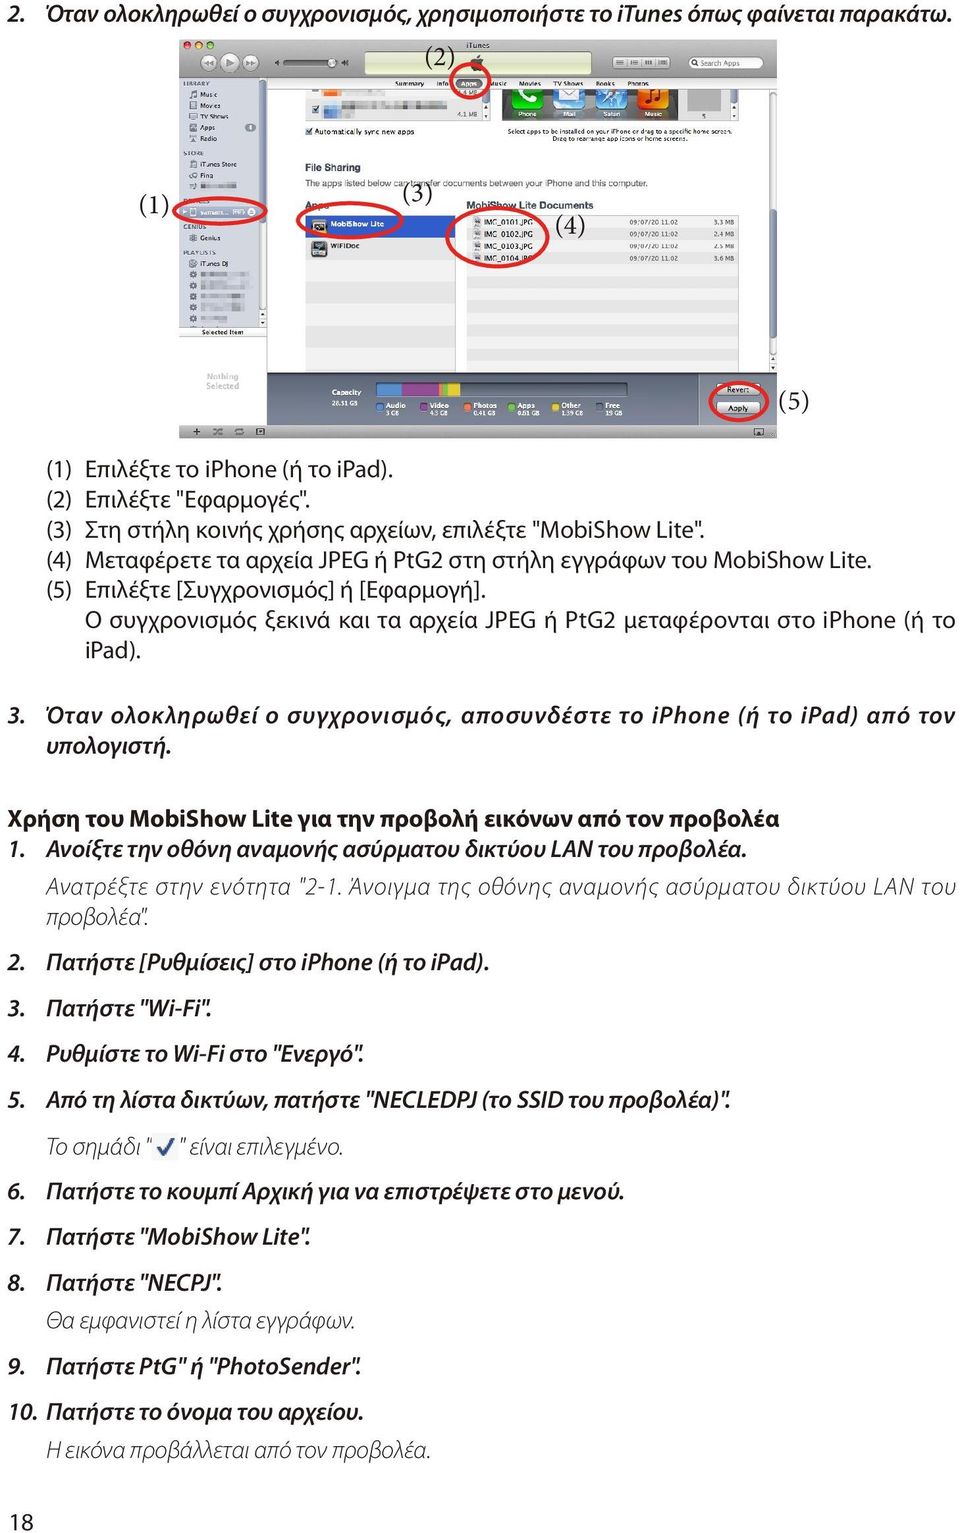 Ο συγχρονισμός ξεκινά και τα αρχεία JPEG ή PtG2 μεταφέρονται στο iphone (ή το ipad). 3. Όταν ολοκληρωθεί ο συγχρονισμός, αποσυνδέστε το iphone (ή το ipad) από τον υπολογιστή.